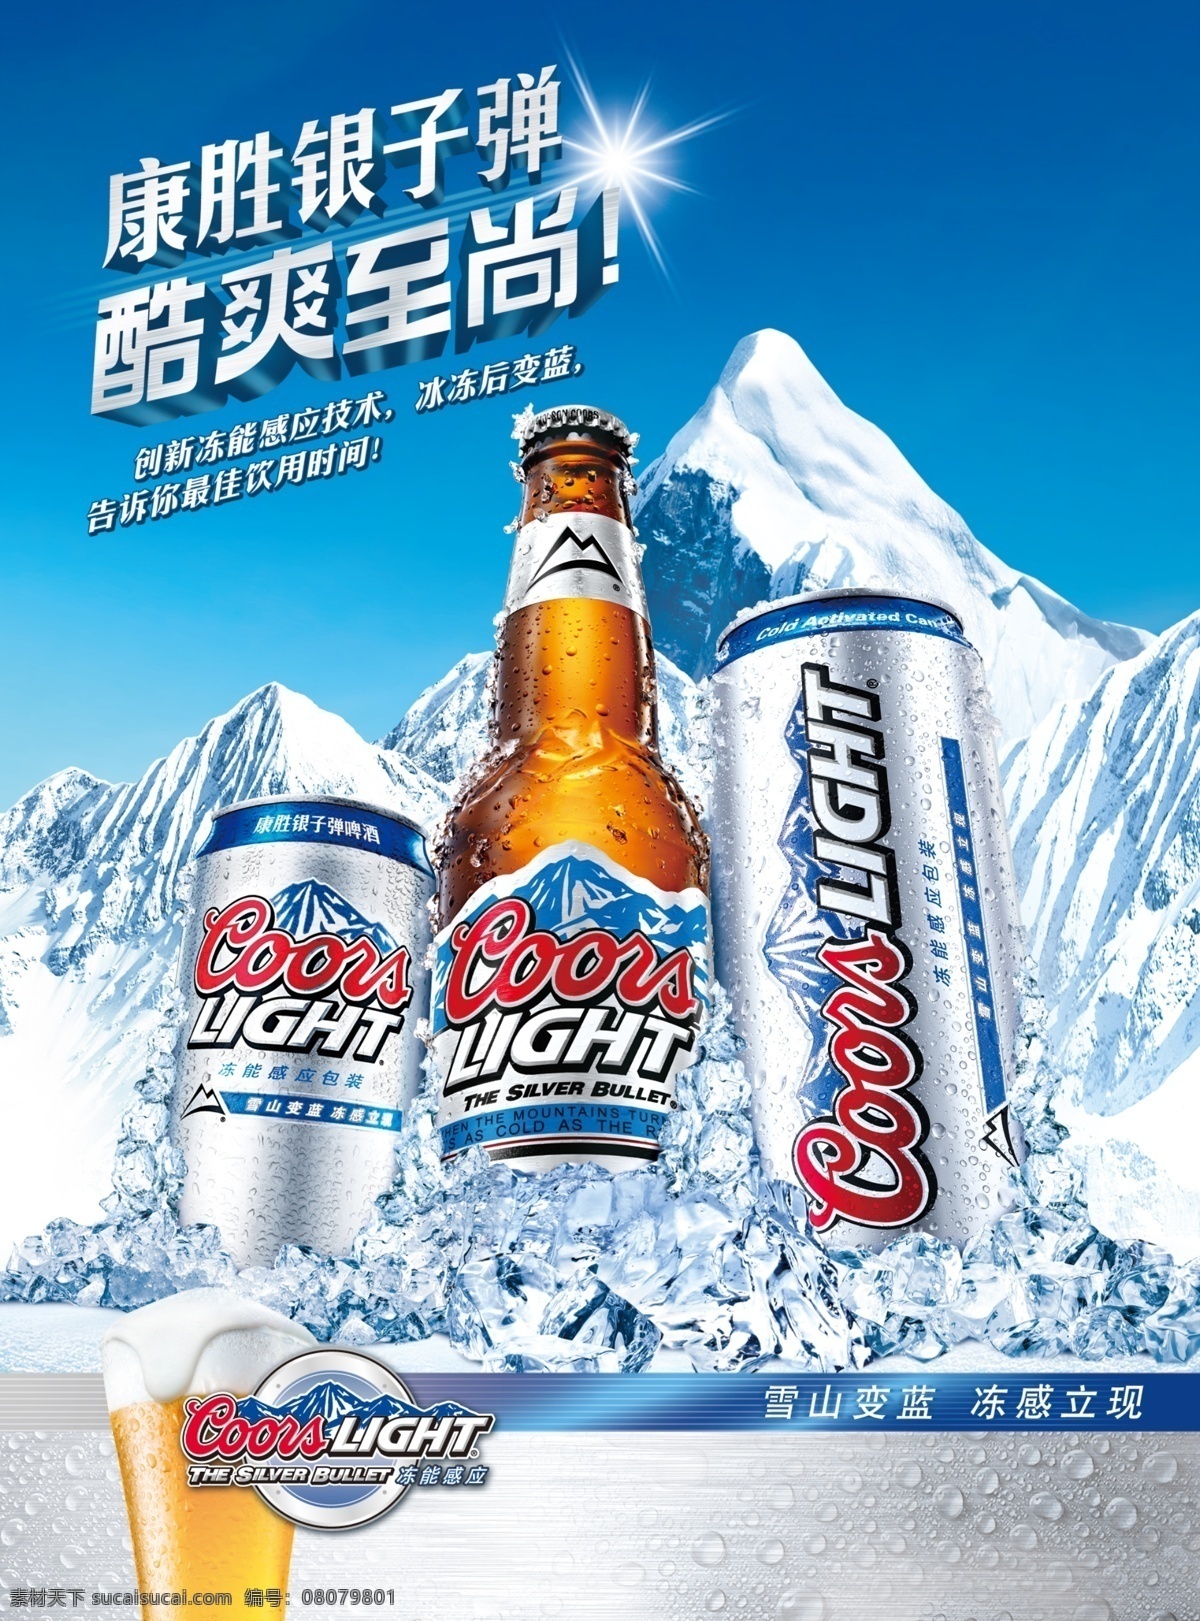 康胜 银子 弹 啤酒 海报 冰山 阳光 冰块 冰爽 青色 天蓝色